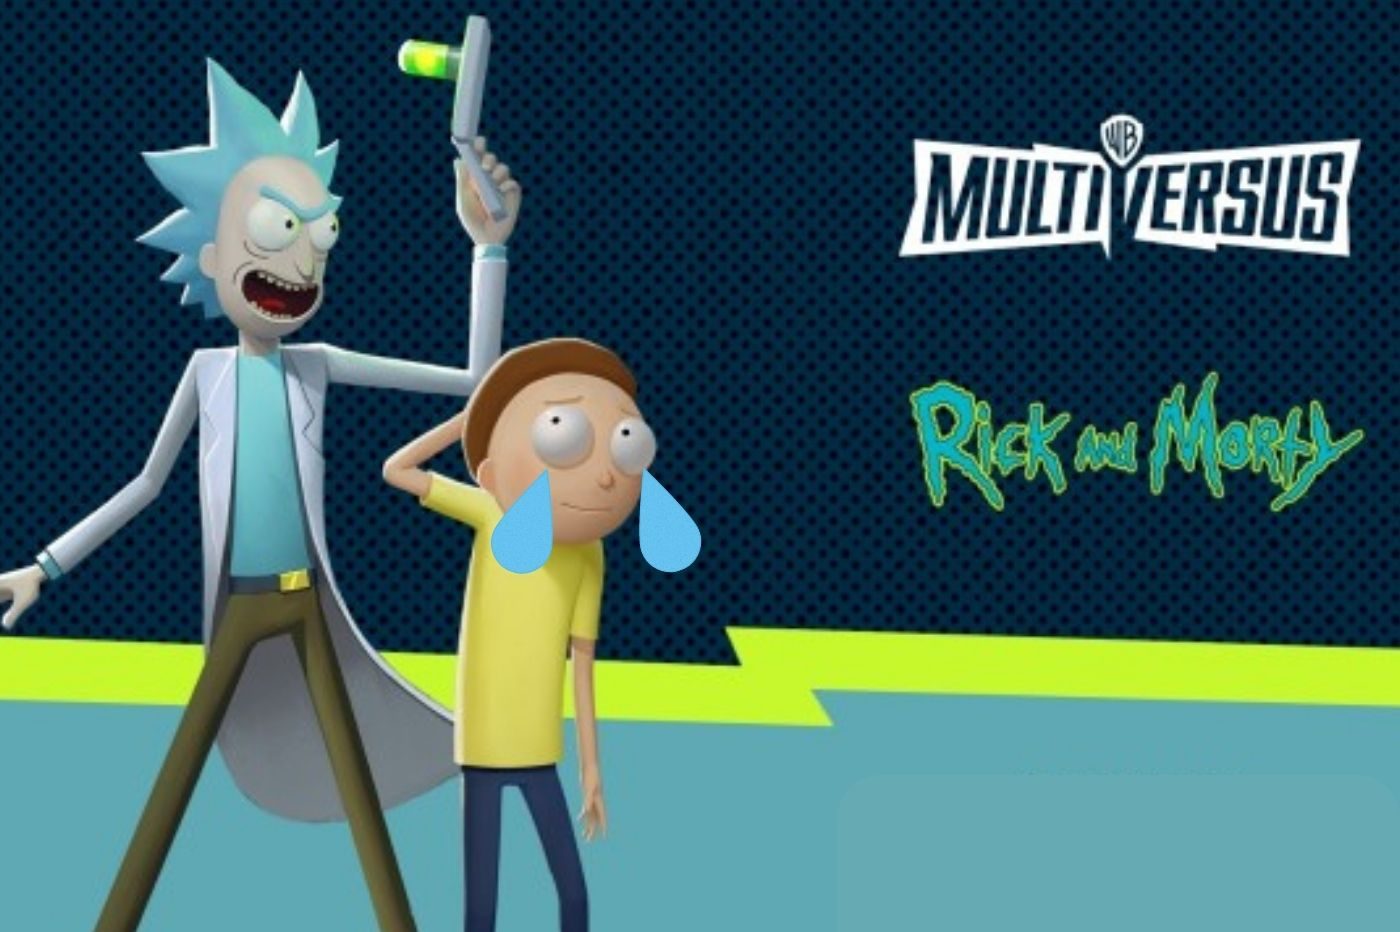 Image d'annonce de Rick et Morty dans Multiversus avec des larmes rajoutées sur